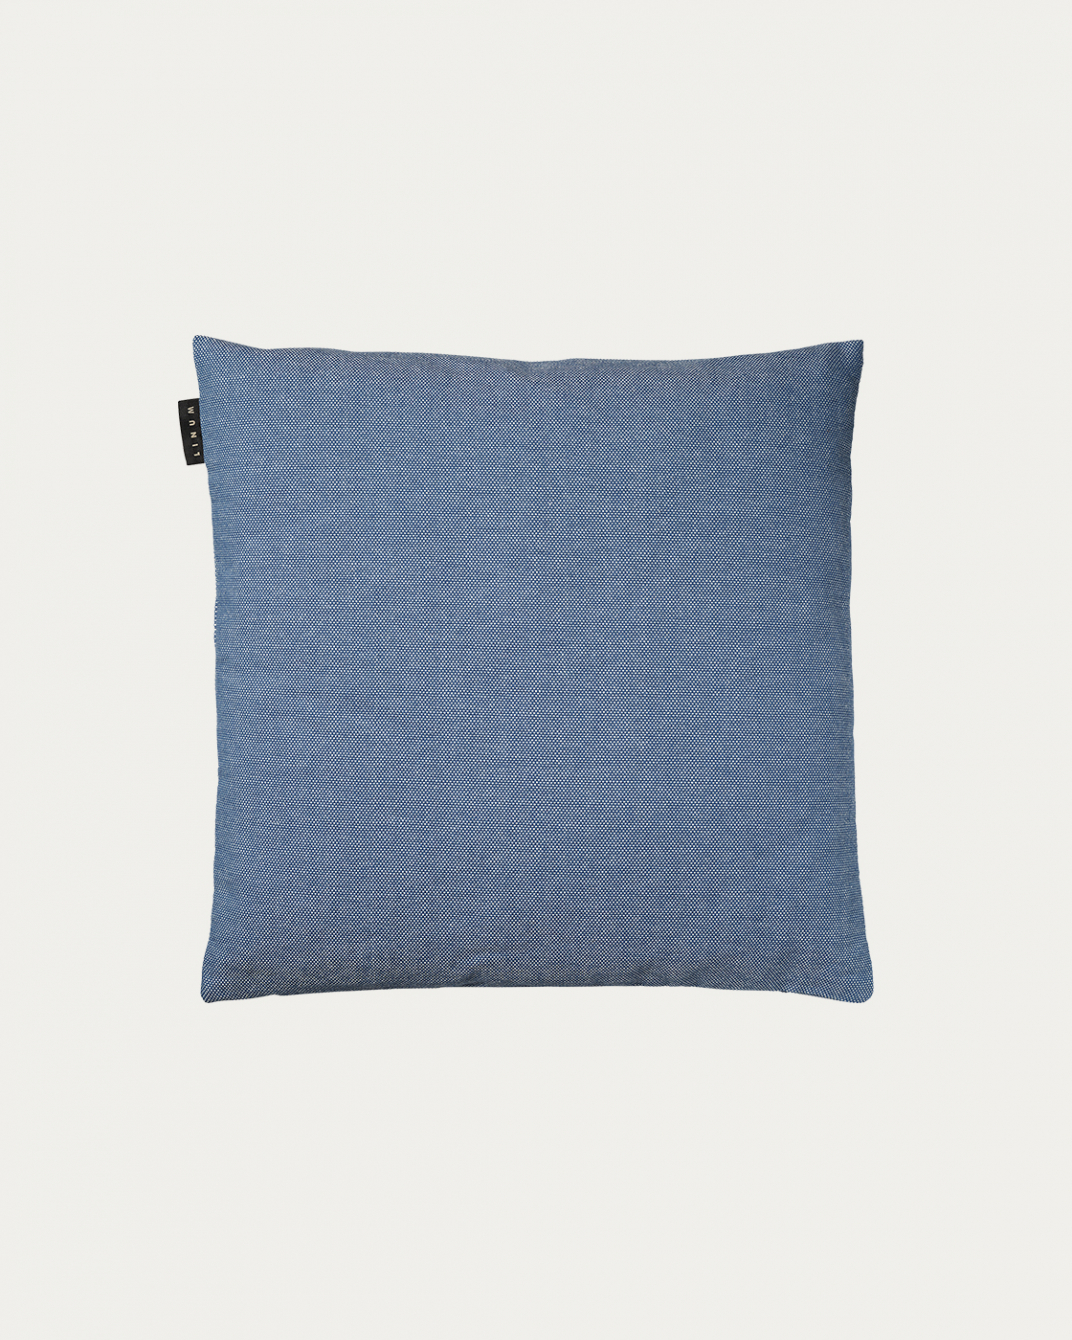 PEPPER Cushion cover 40x40 cm Deep sea blue